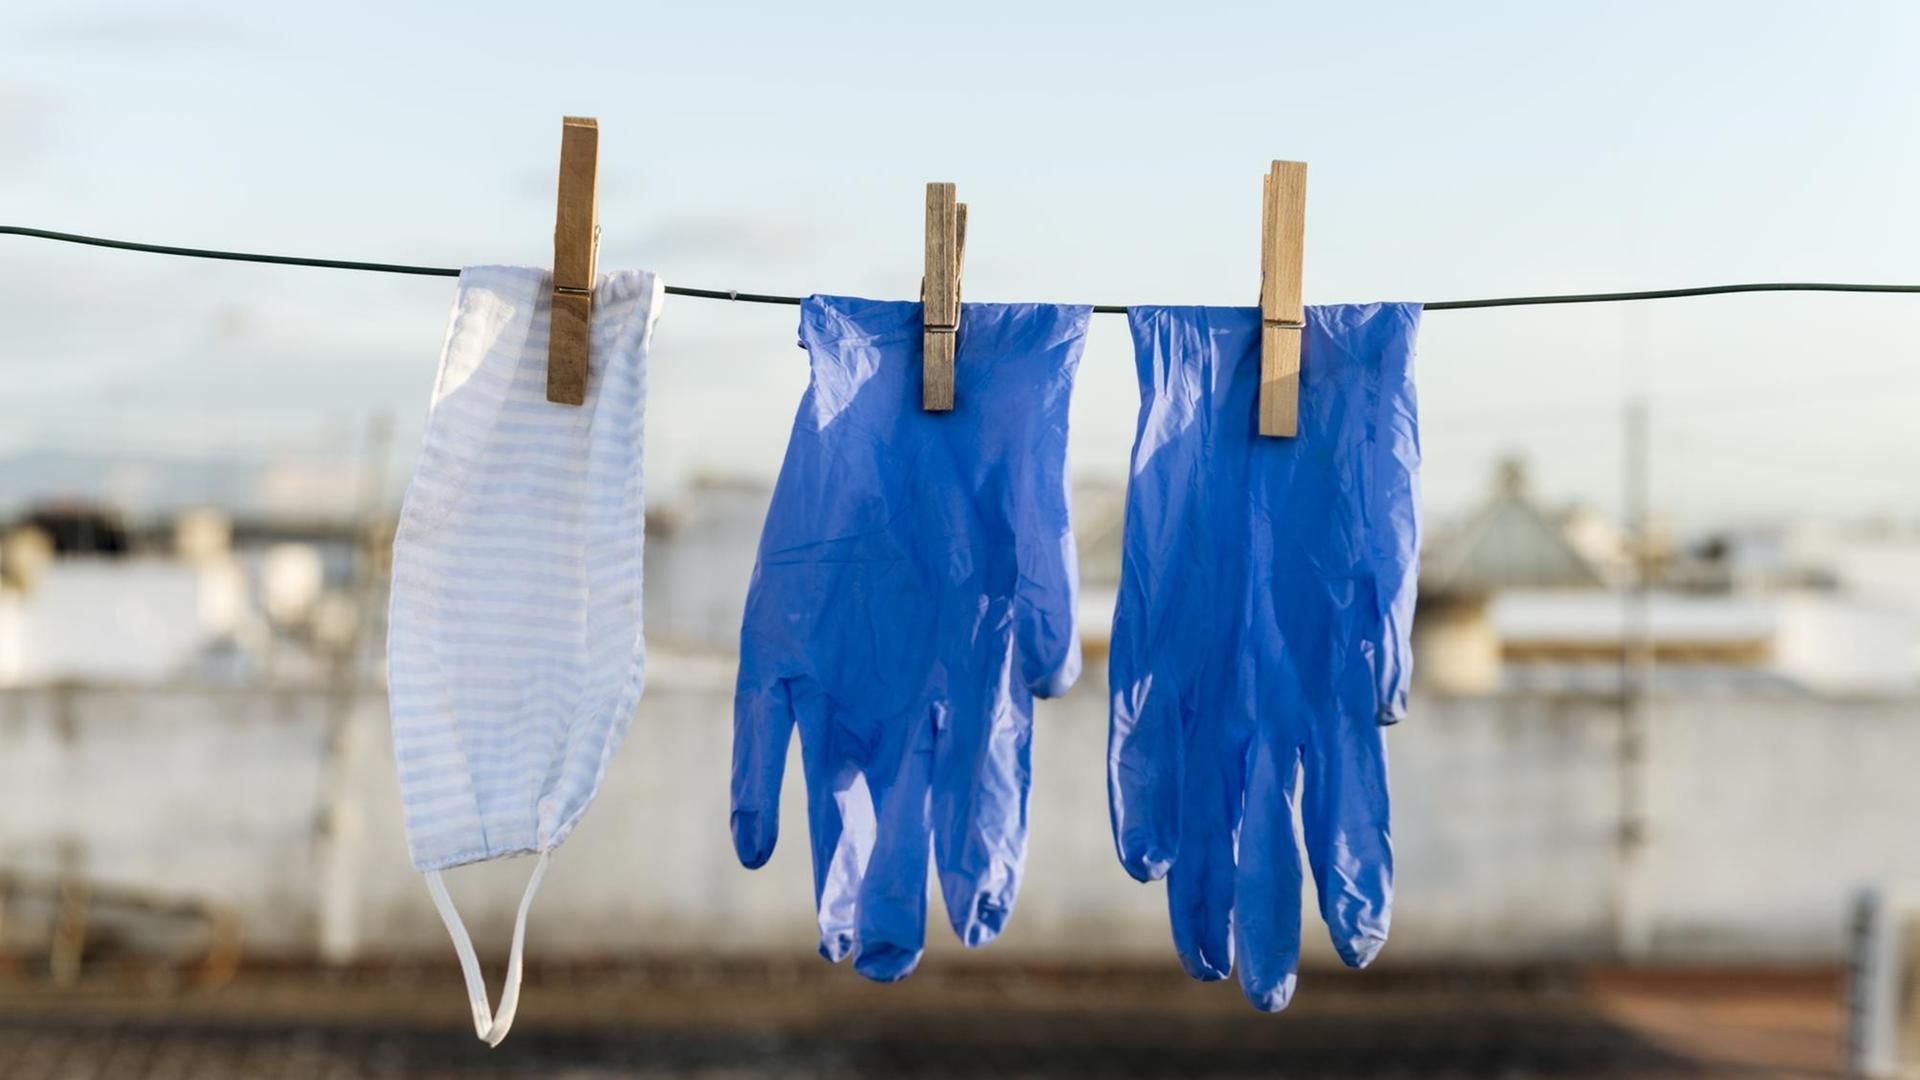 Gesichtsmaske und Handschuhe hängen über der Wäscheleine.